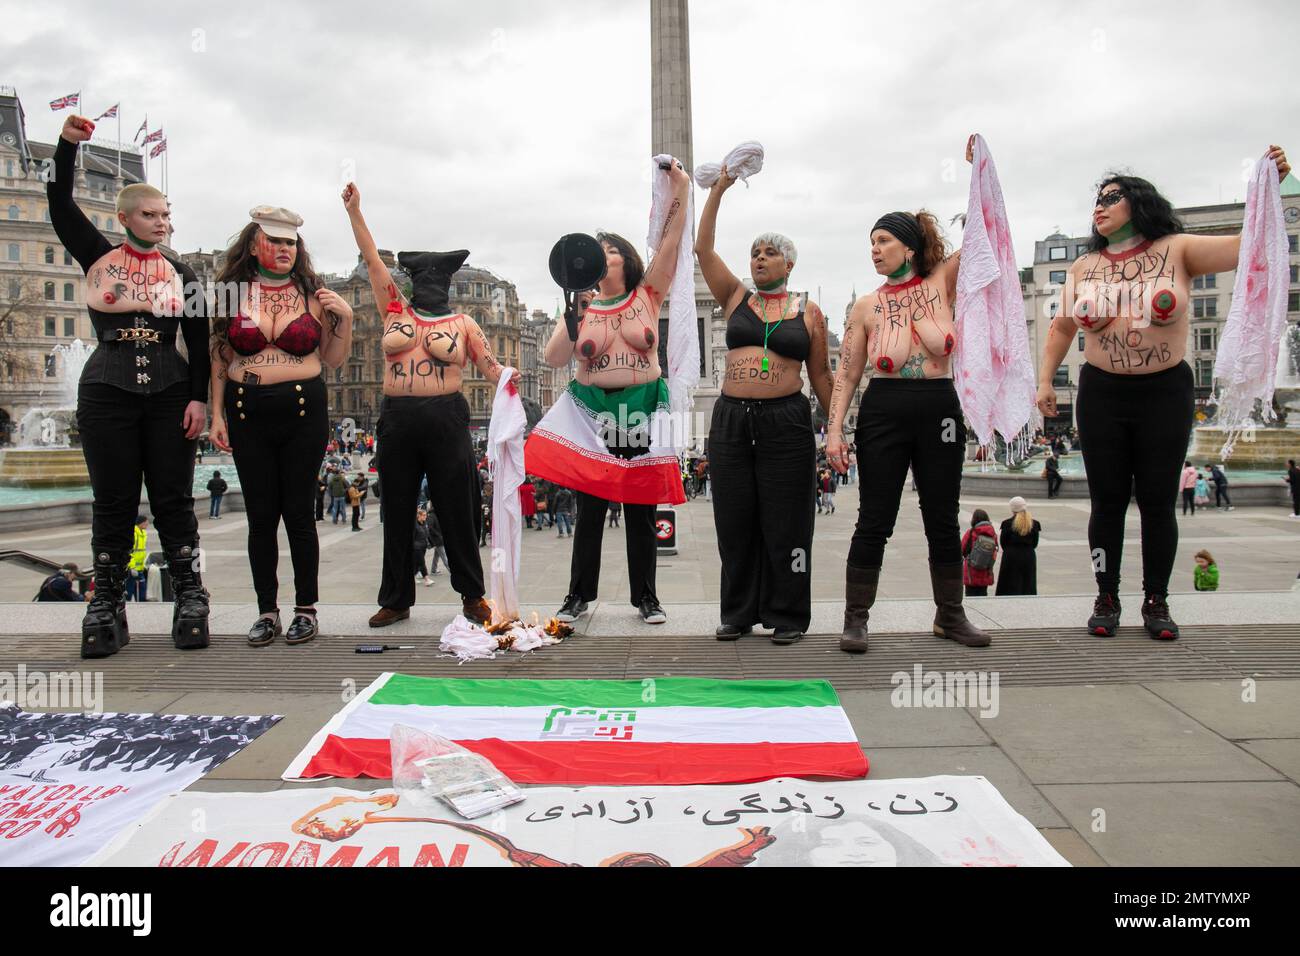 Londra, Inghilterra, Regno Unito 01/02/2023 le donne hanno nudo i loro seni e corpi per un Riot globale del corpo per la libertà di vita delle donne sul giorno di no Hijab. Le donne si trovavano sulle scale di Trafalgar Square con slogan sul loro corpo e hijab simbolicamente bruciati Foto Stock